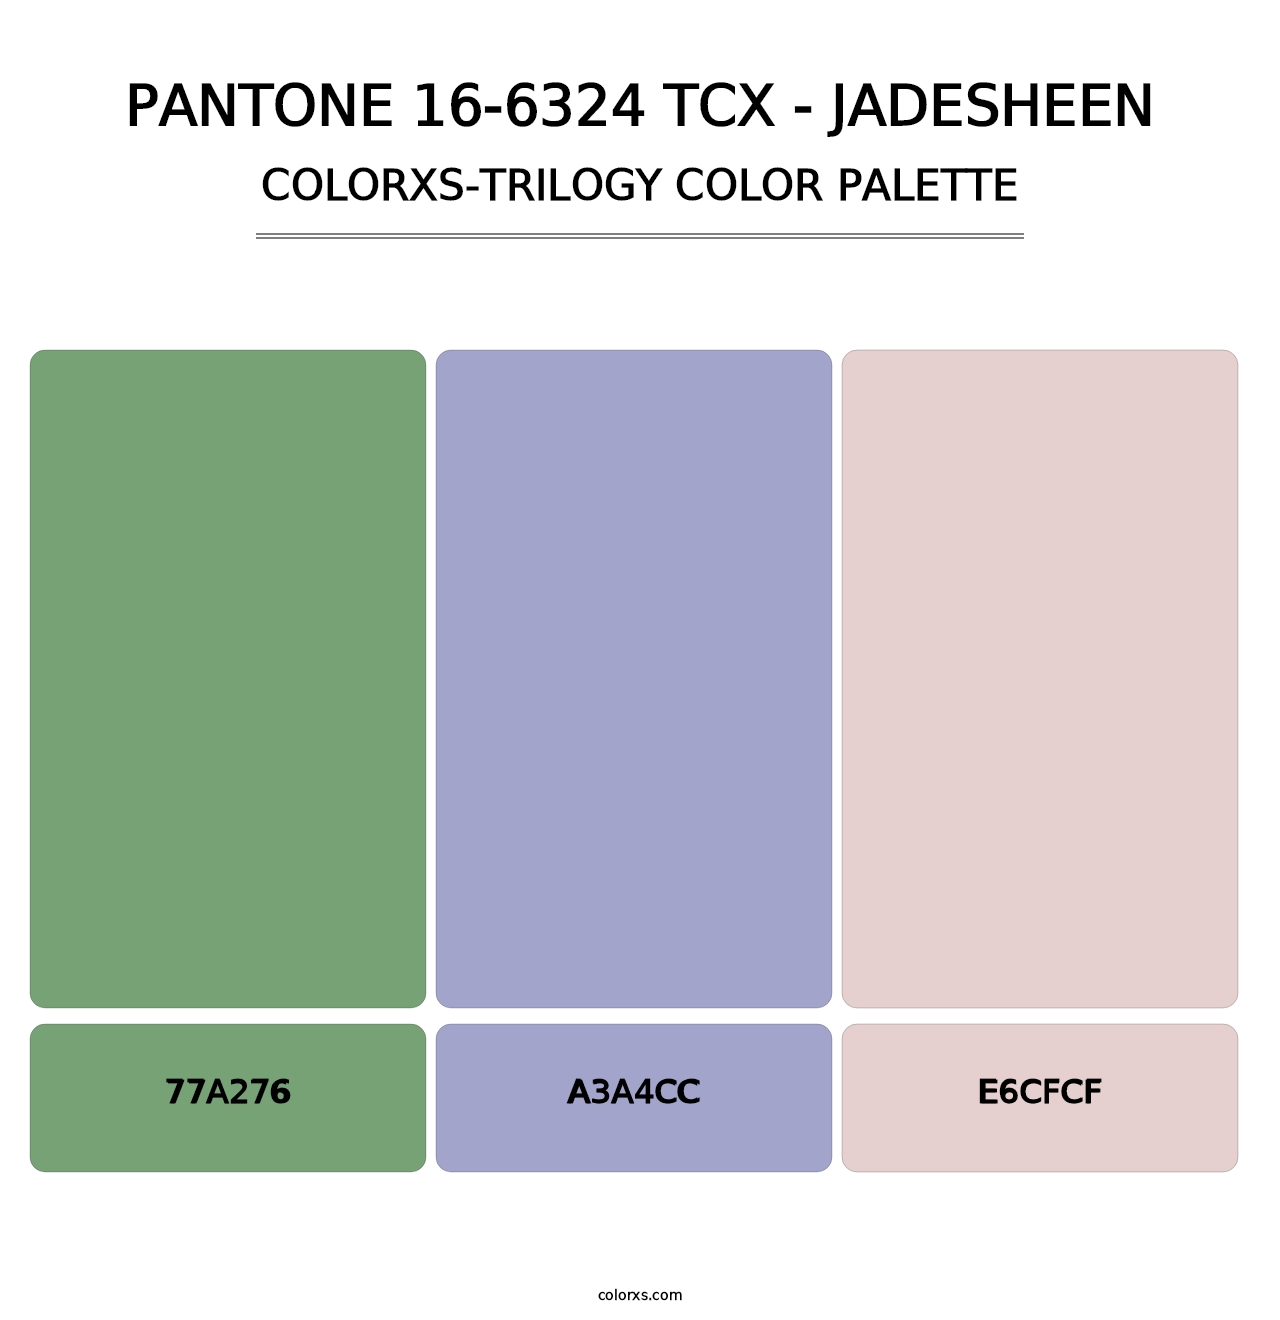 PANTONE 16-6324 TCX - Jadesheen - Colorxs Trilogy Palette